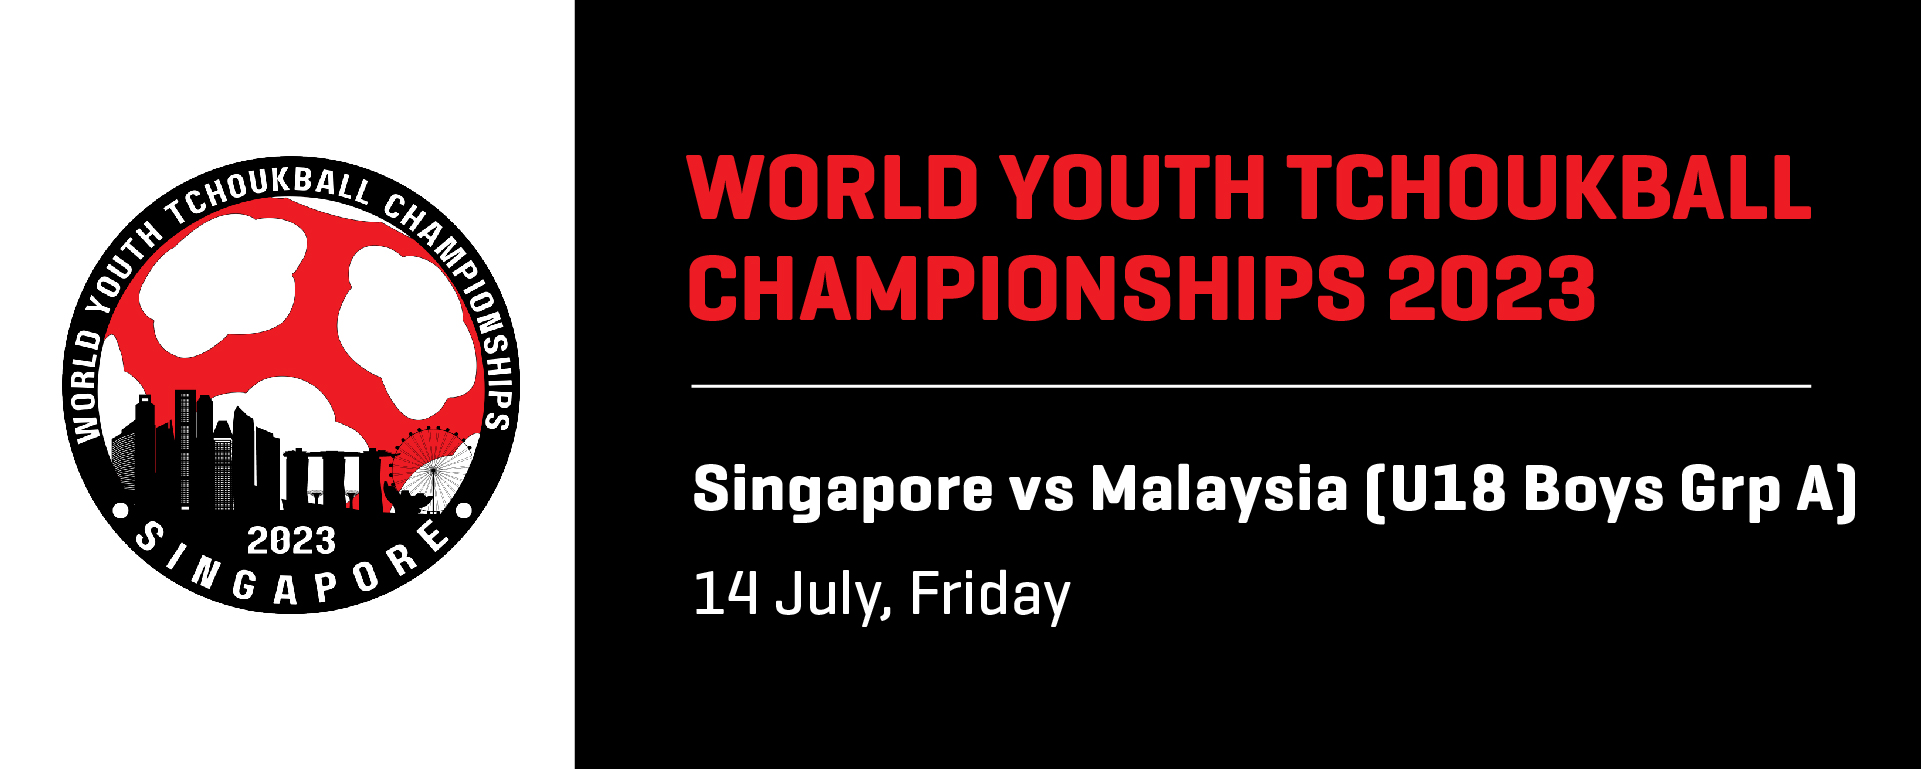 World Youth Tchoukball Championships 2023 | U18 Boys | Singapore A vs Malaysia (Grp A)